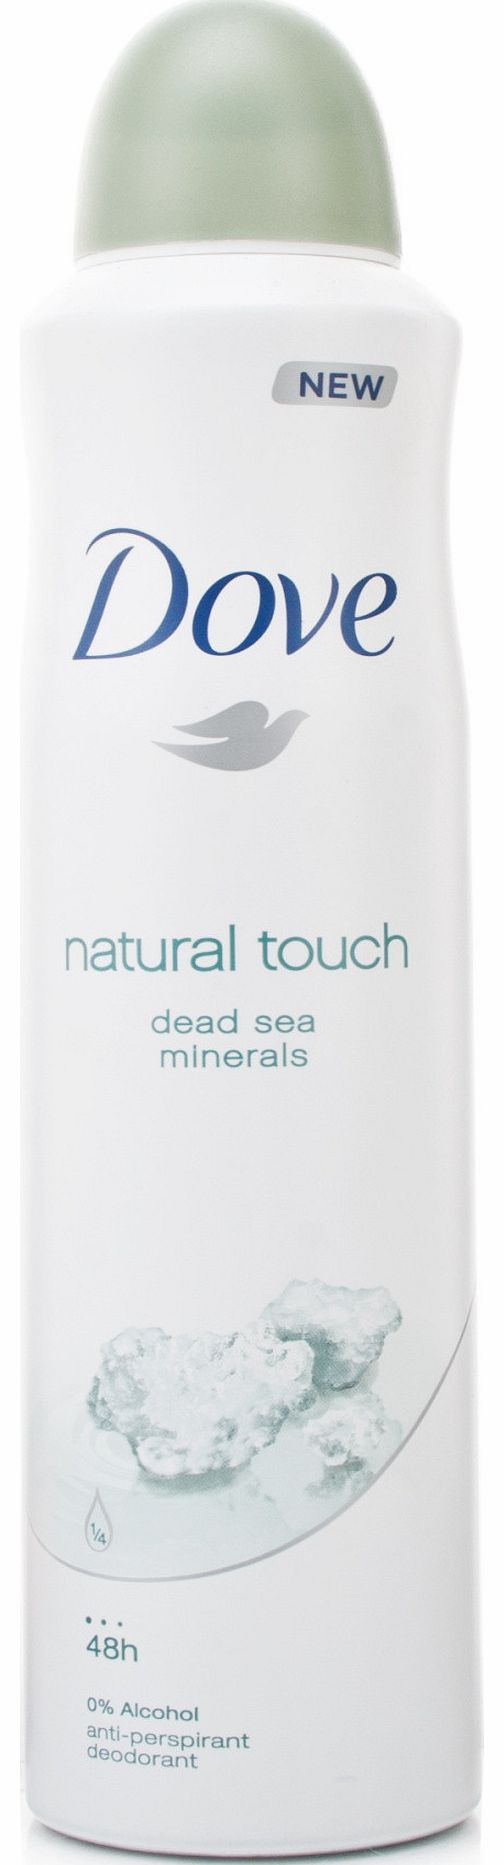 Dove Natural Touch Dead Sea Minerals